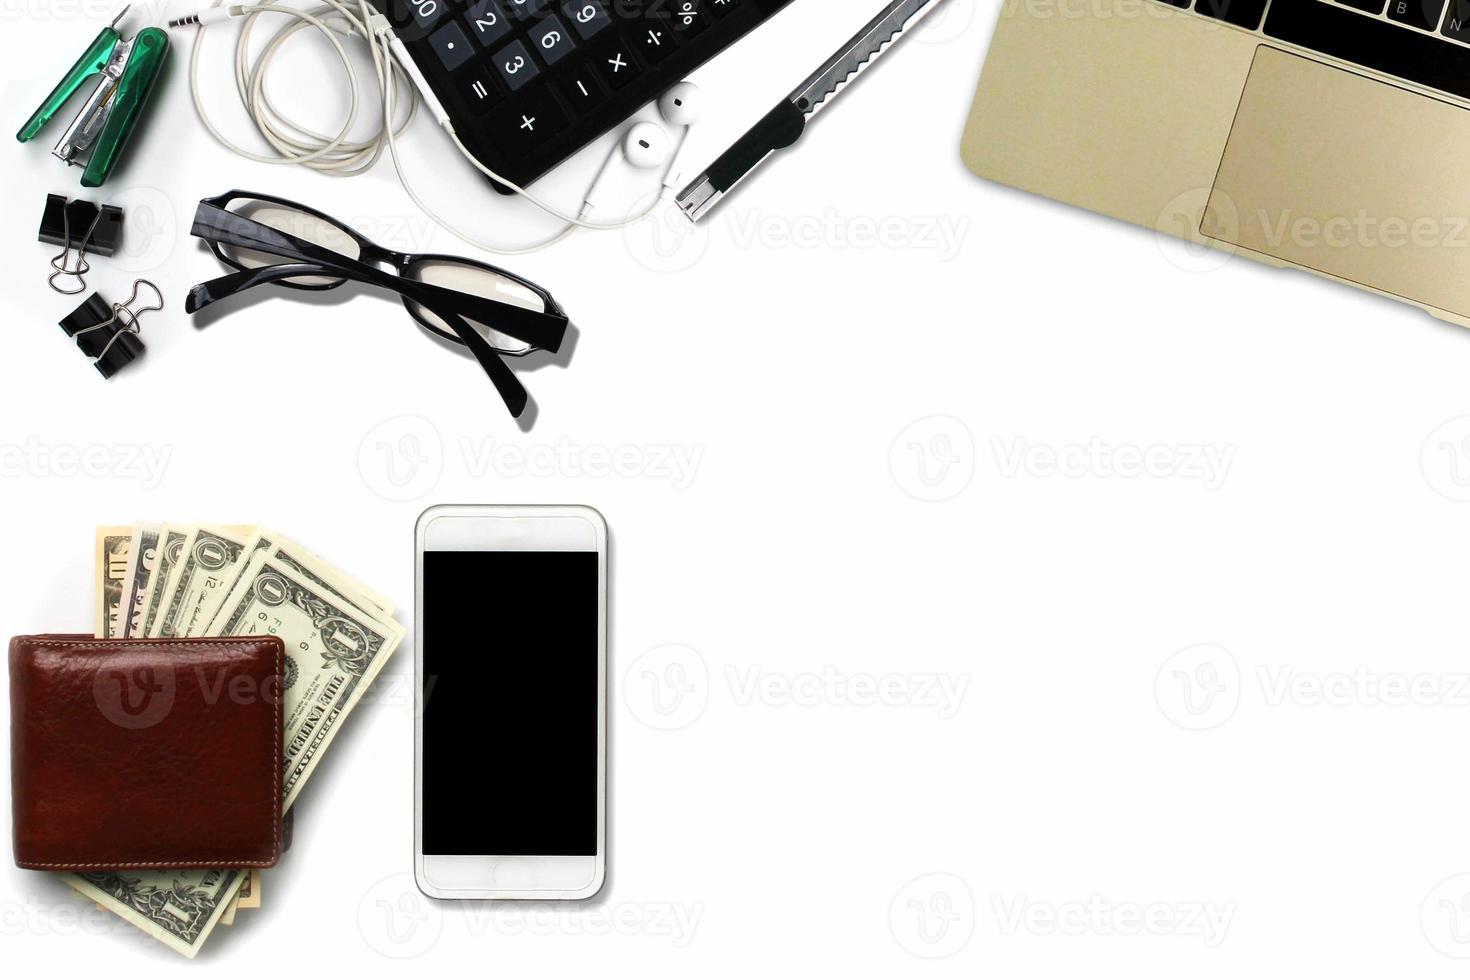 wit bureau met Amerikaanse dollars, smartphone met zwart scherm, pen, rekenmachine, portemonnee en benodigdheden. bovenaanzicht met kopieerruimte foto